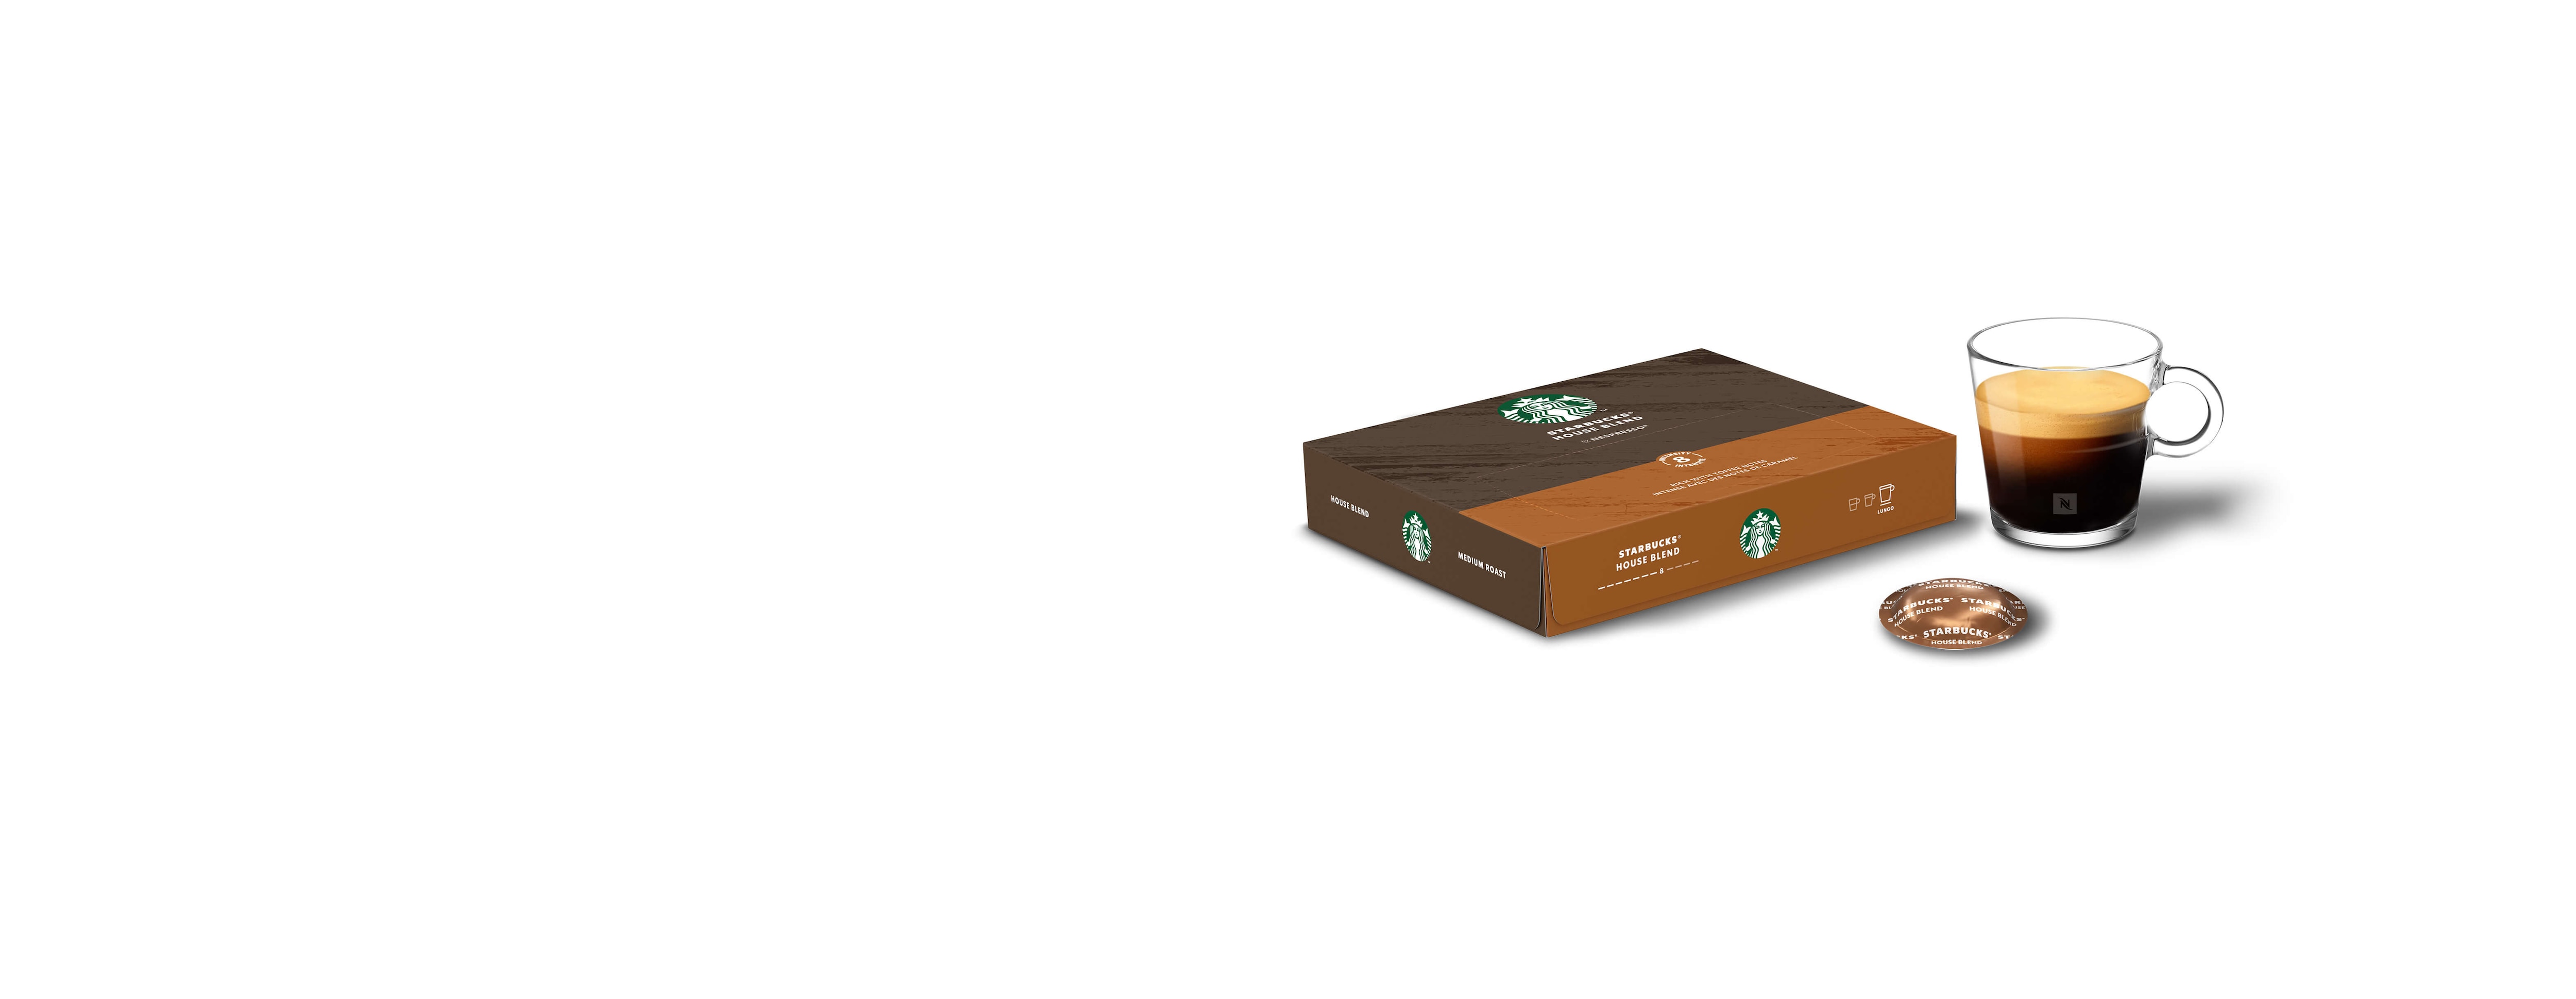 Starbucks Nespresso Medium Roast House Blend Coffee (50 Pack): Gift Idea For